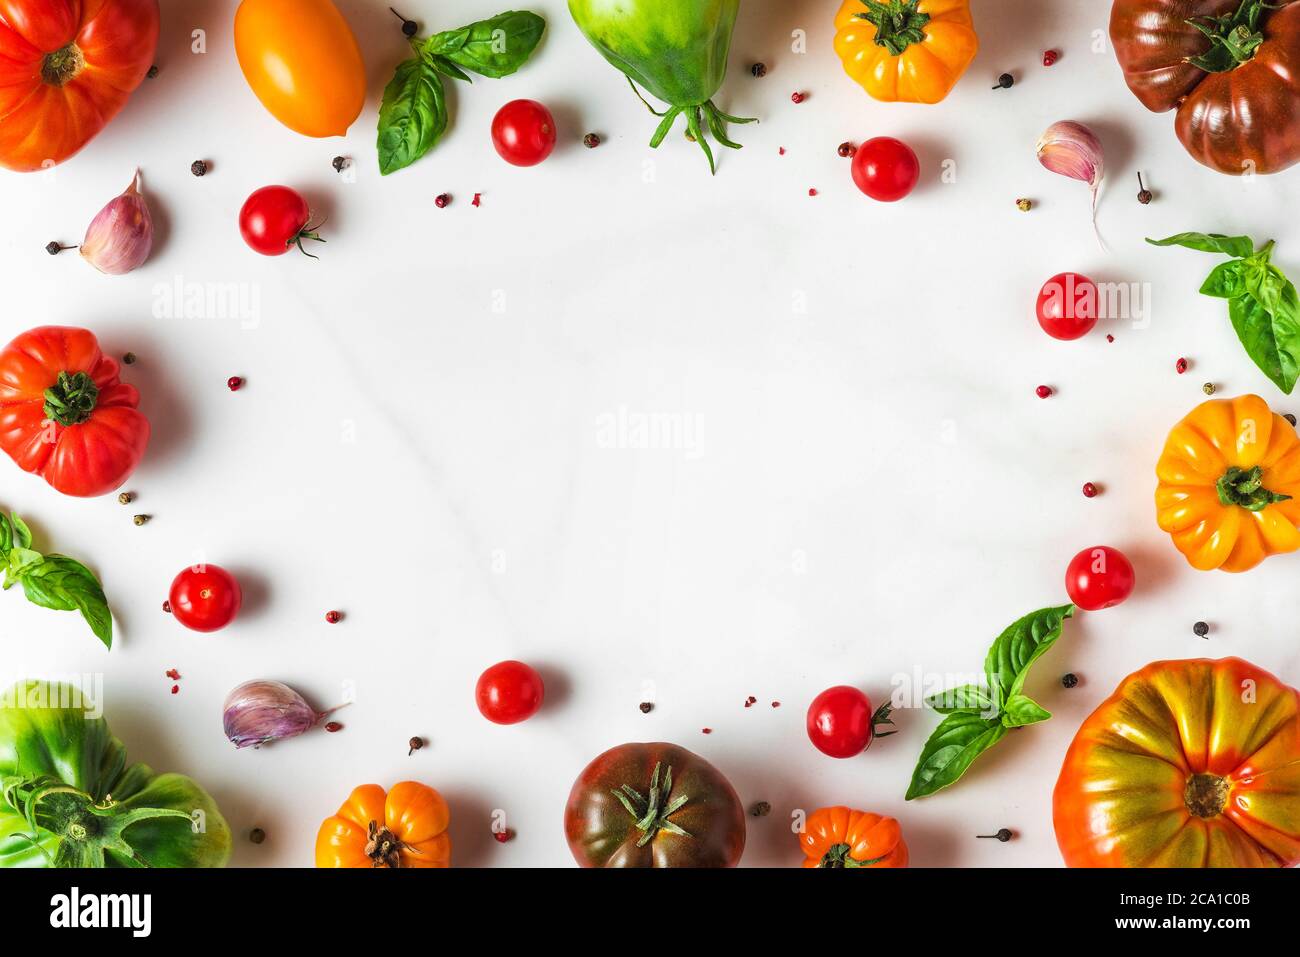 Zusammensetzung der Lebensmittel. italienische Küche Kochkonzept. Rahmen aus bunten Bio-Gemüse. Tomaten, Pfeffer, Knoblauch und Basilikum auf weißem Hintergrund. Stockfoto